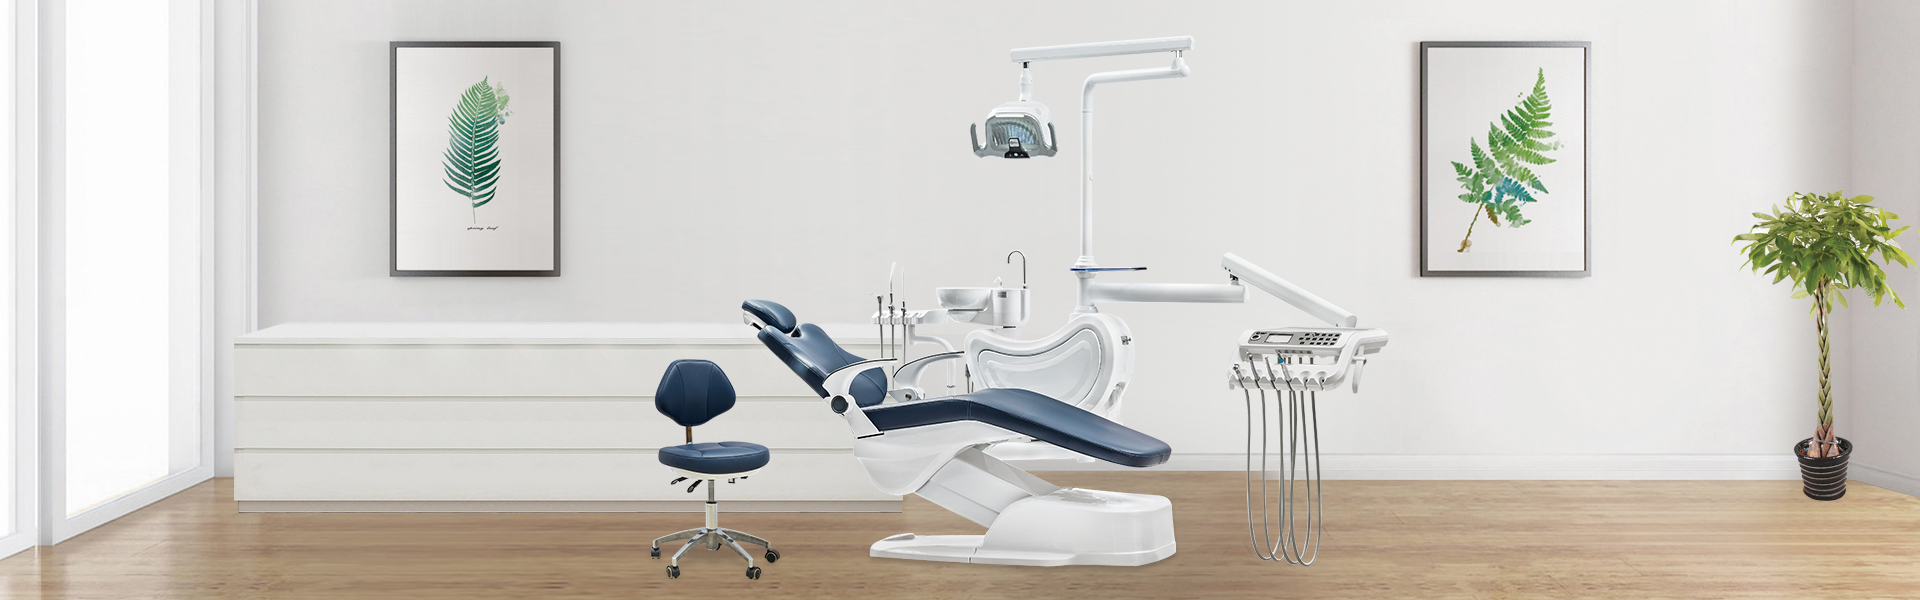 Dental Chair Unit MKT-380W